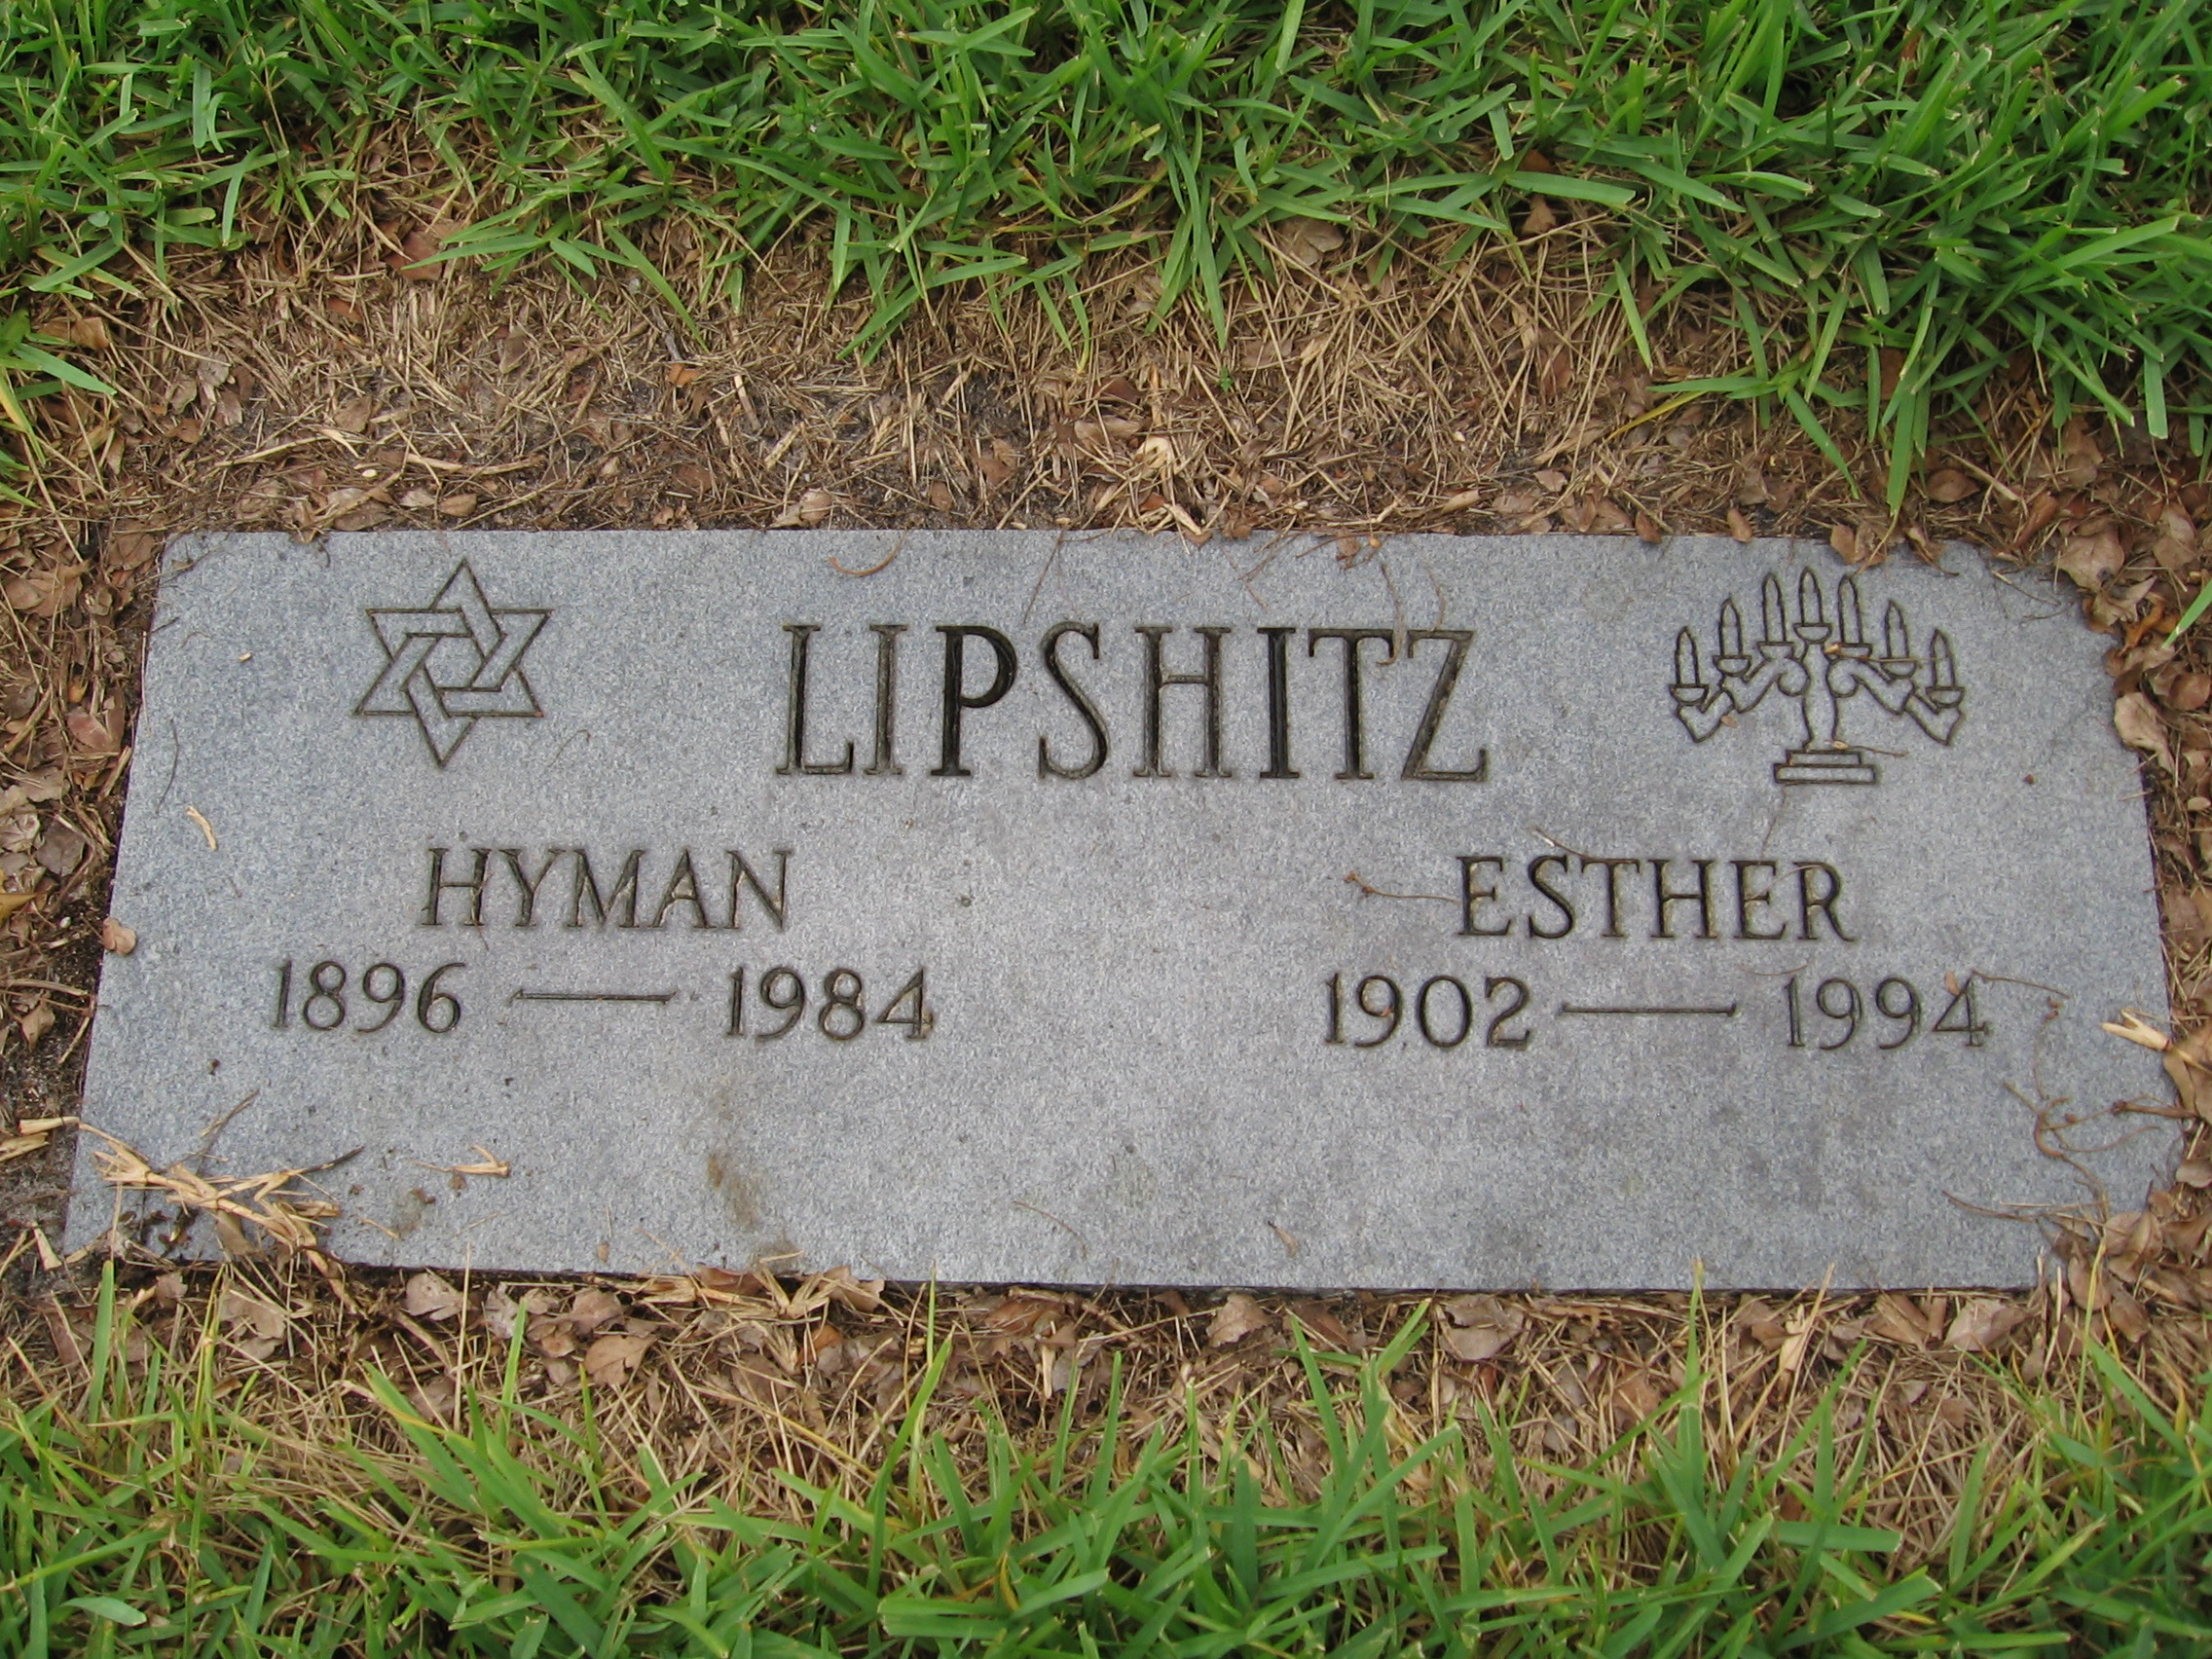 Hyman Lipshitz